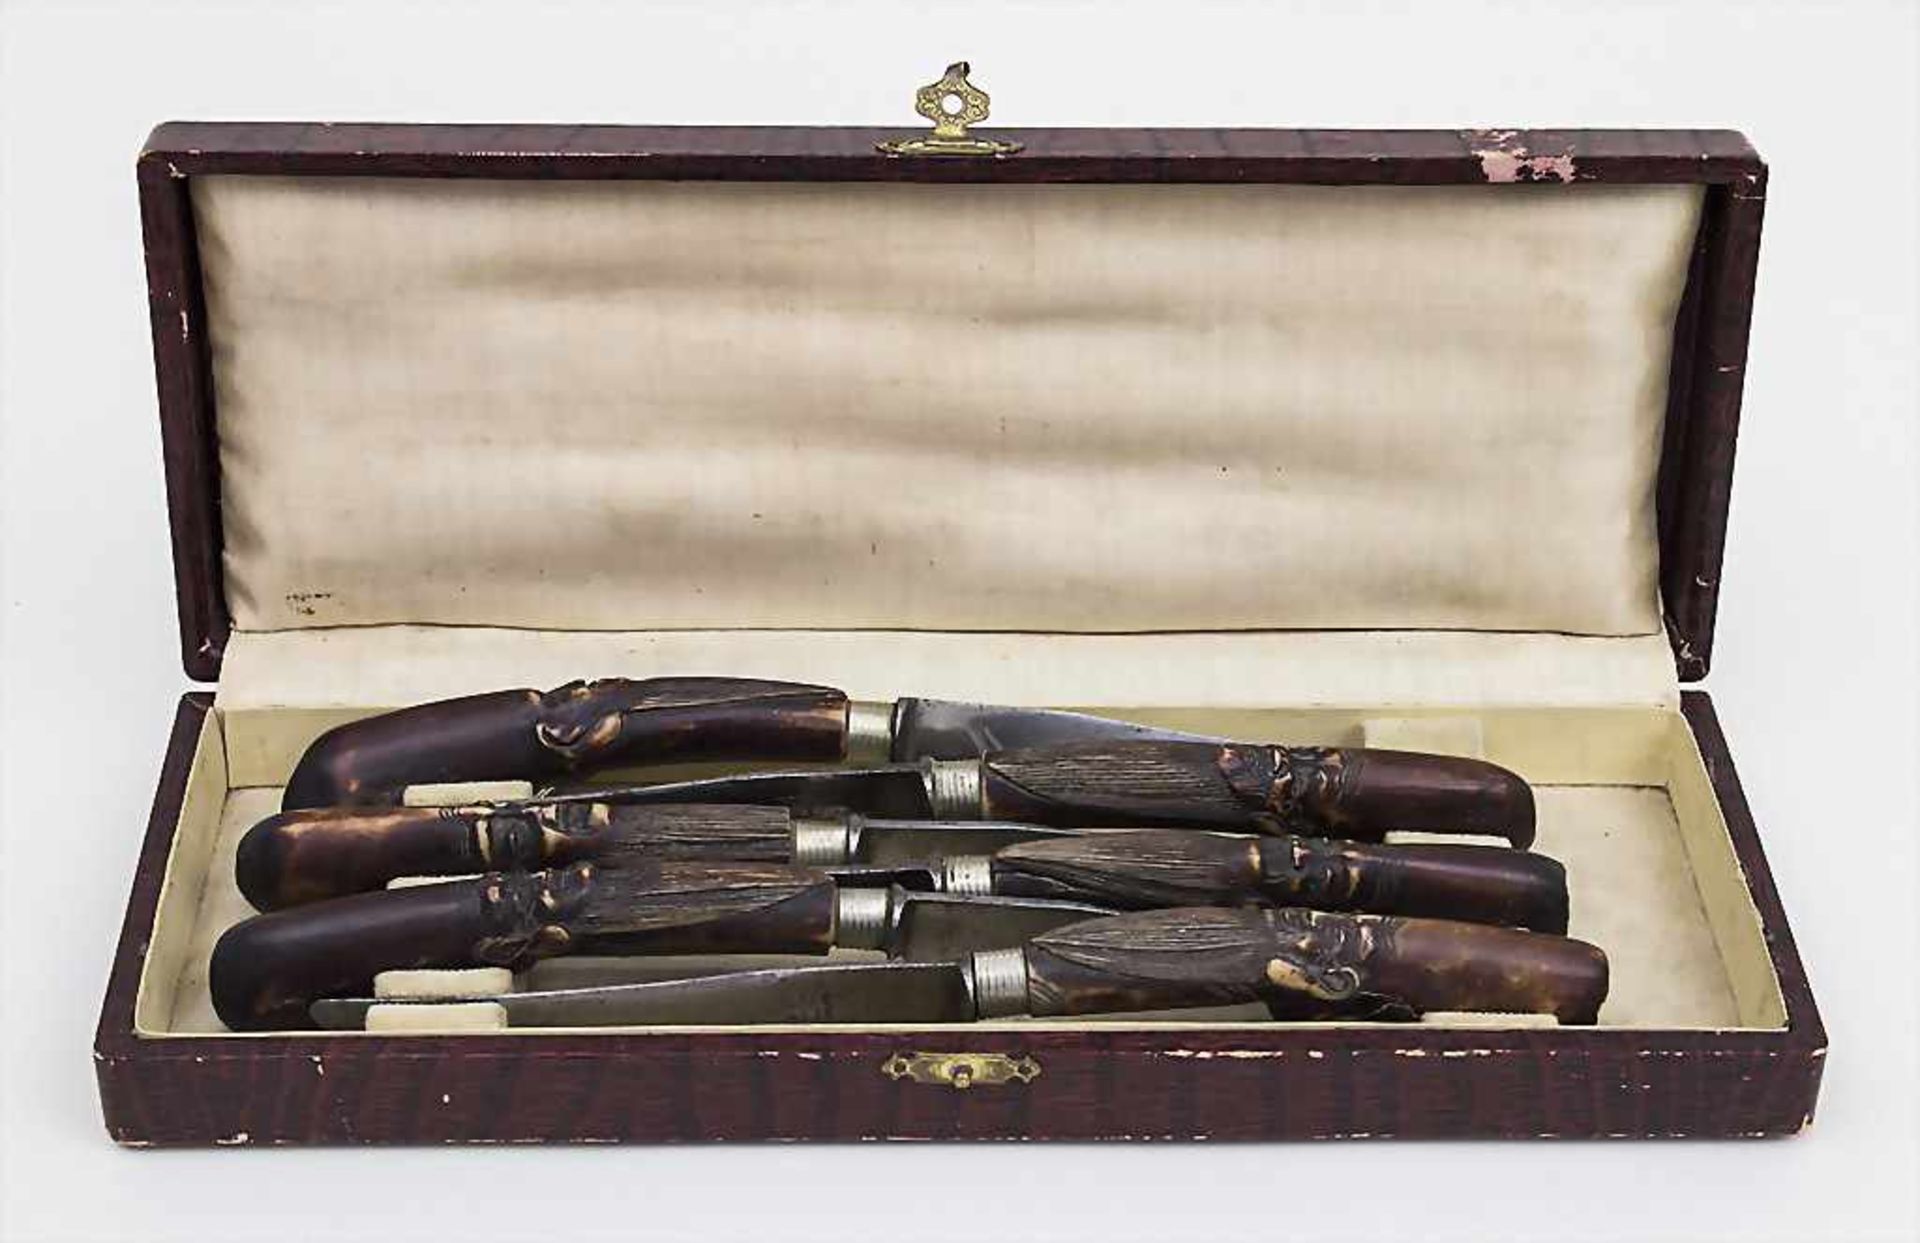 6 Messer mit beschnitzten Bein-Köpfen / Knifes with Carved Heads, Japan, um 1900Material: Bein